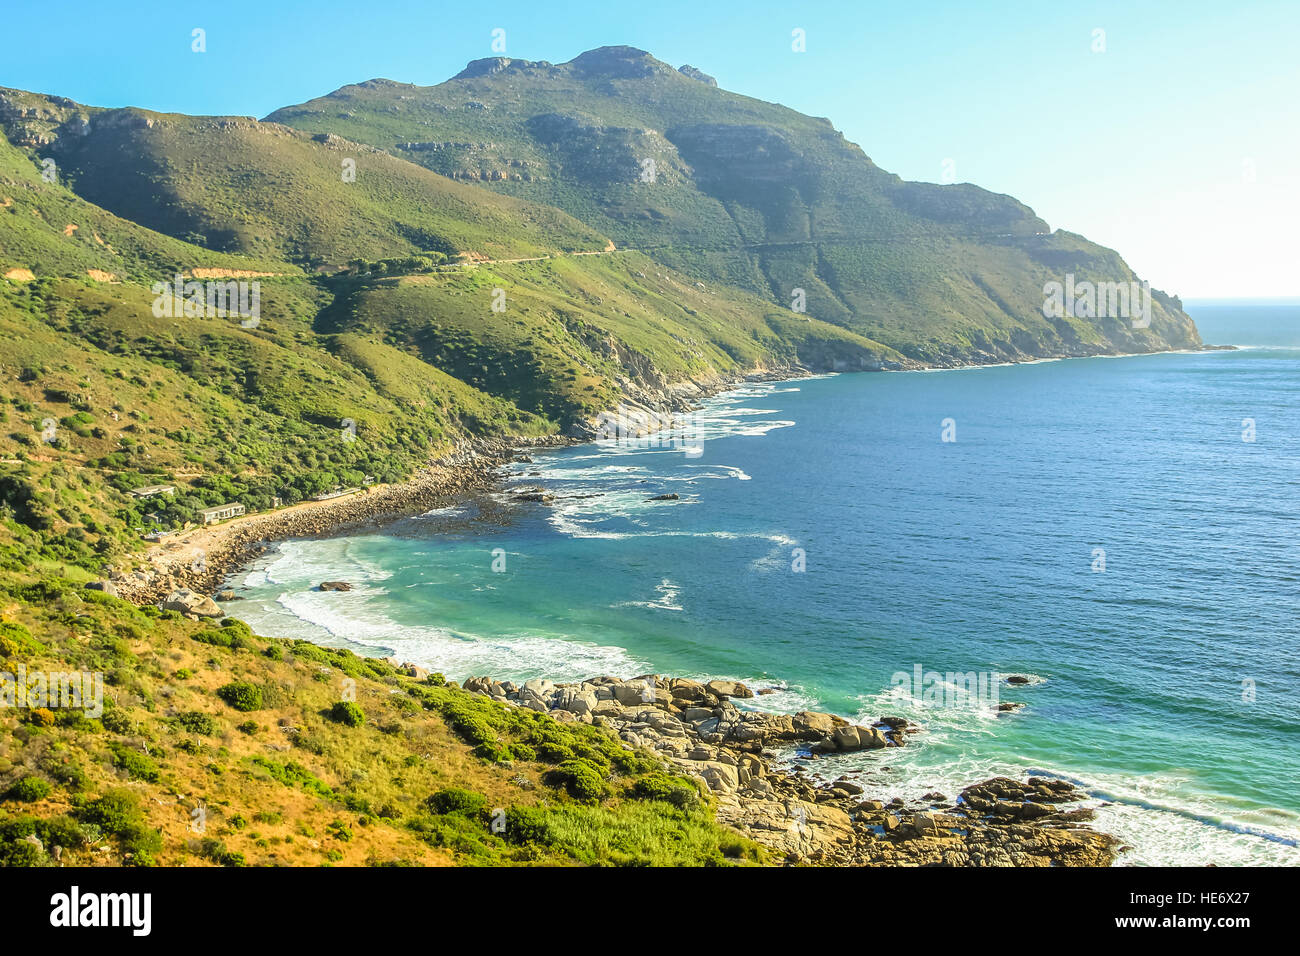 Cape Town scenic drive Stock Photo